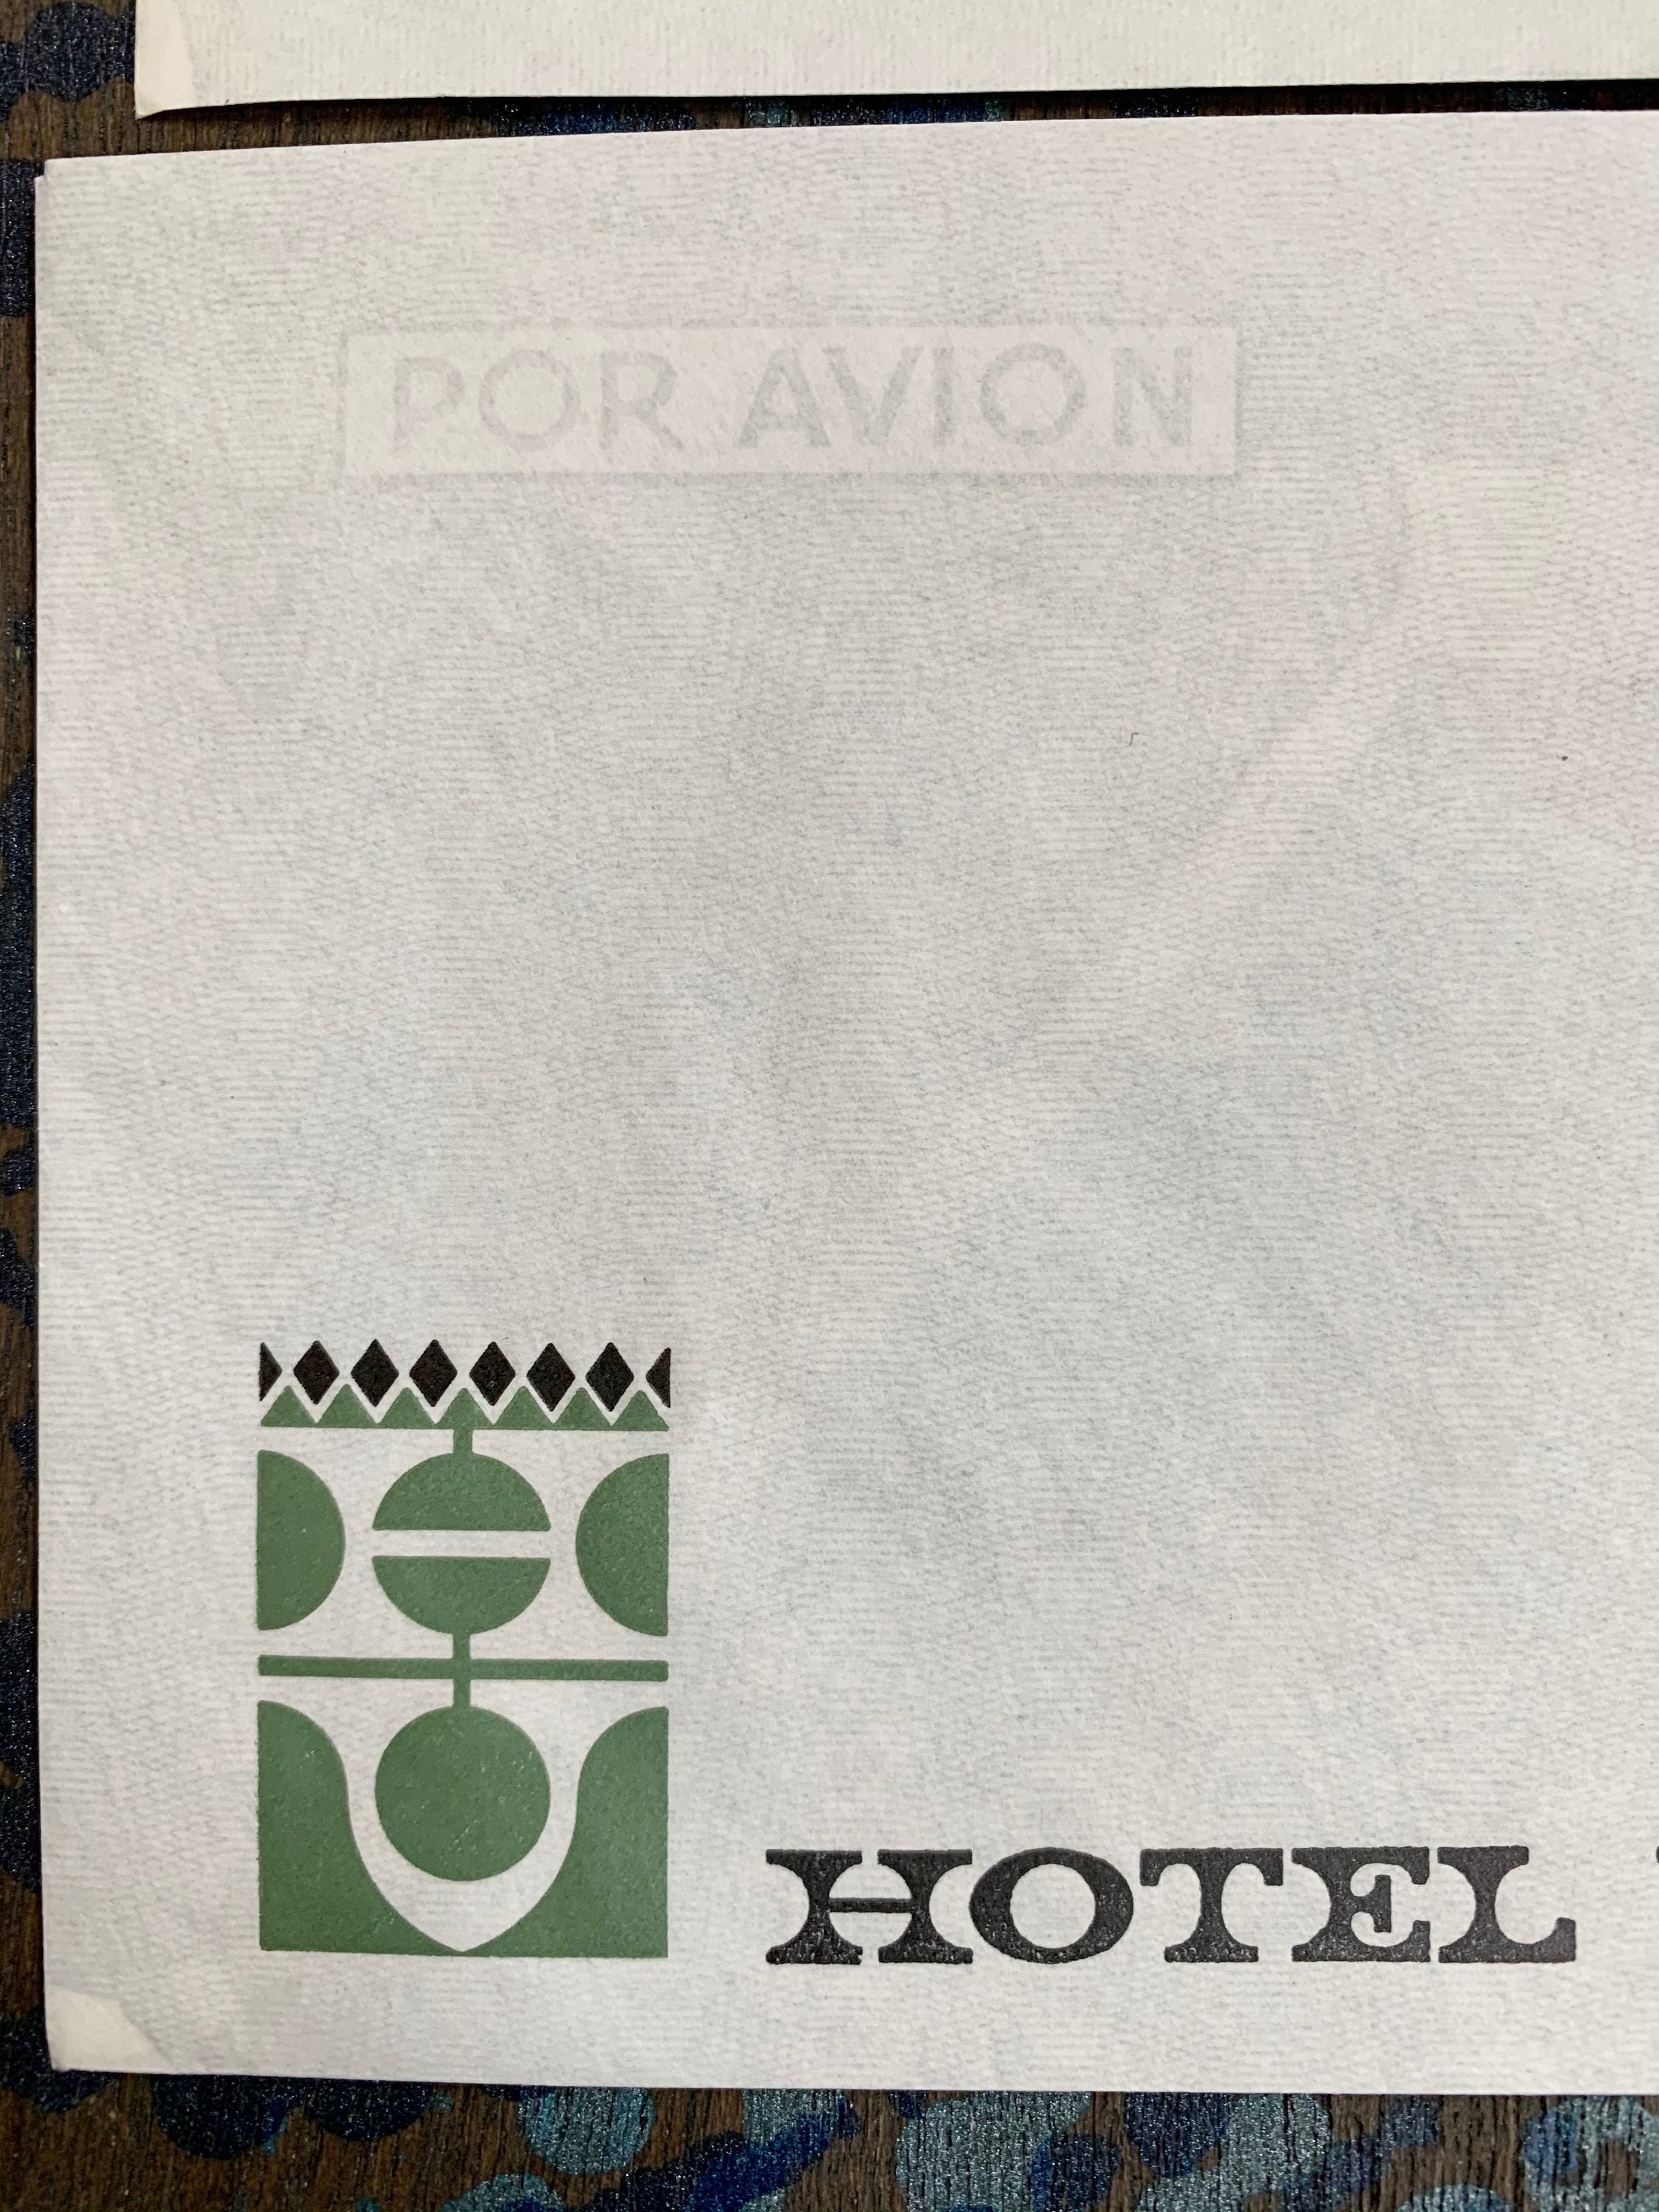 Hotel Victoria (España) Vintage Retro Stationary Envelopes Palma De Mallorca España Por Avion (Set of 3) Legal Size 4 1/4 x 9 Inches